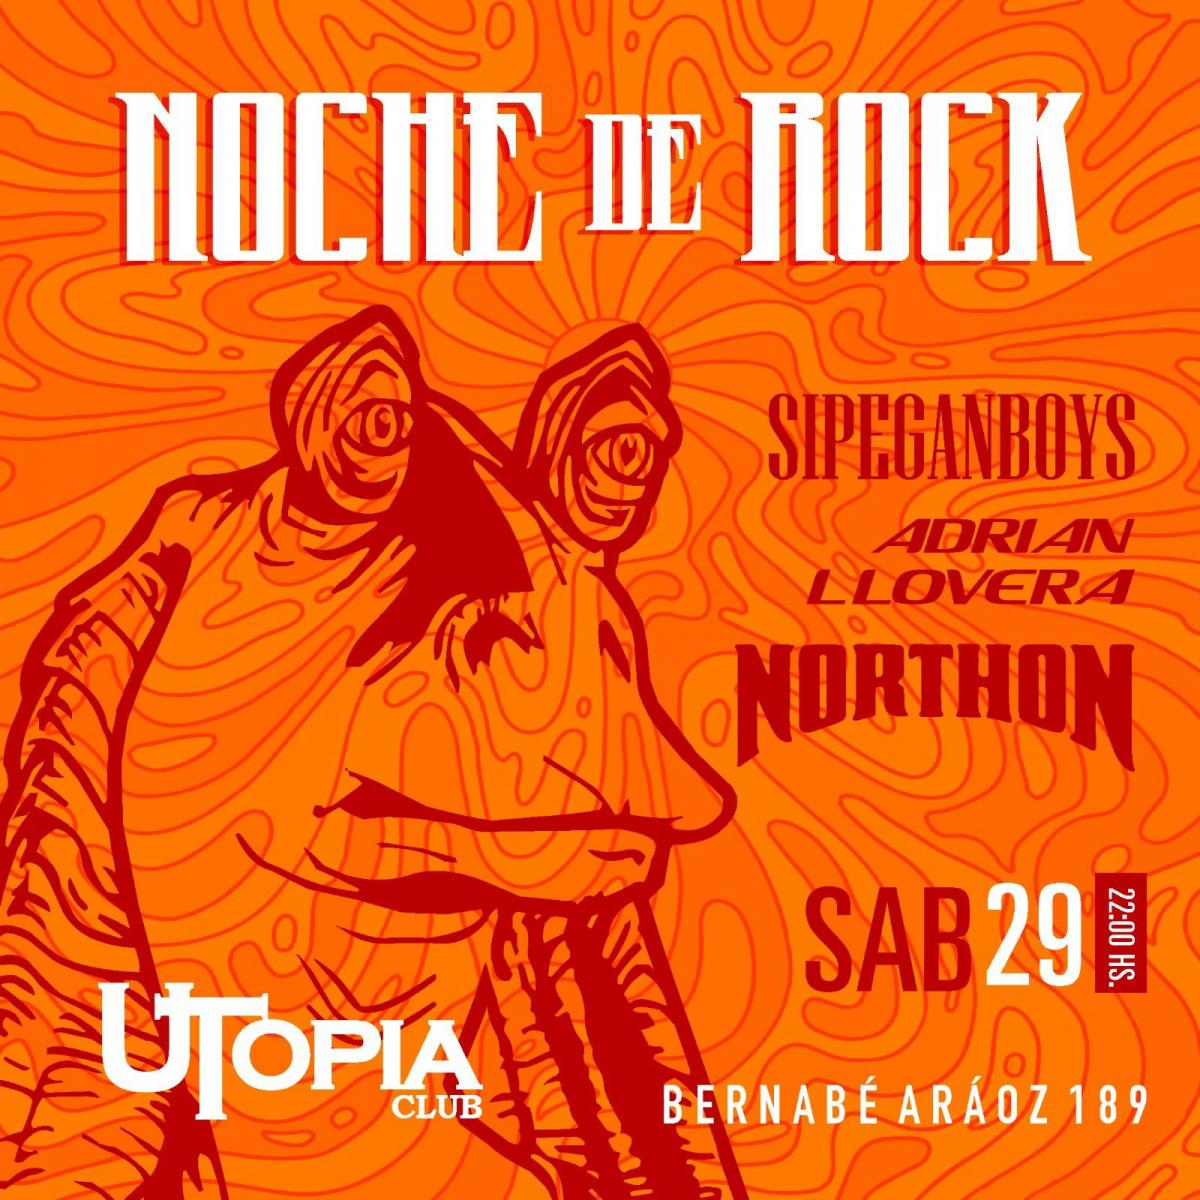 Se viene una noche a puro rock en Tucumán